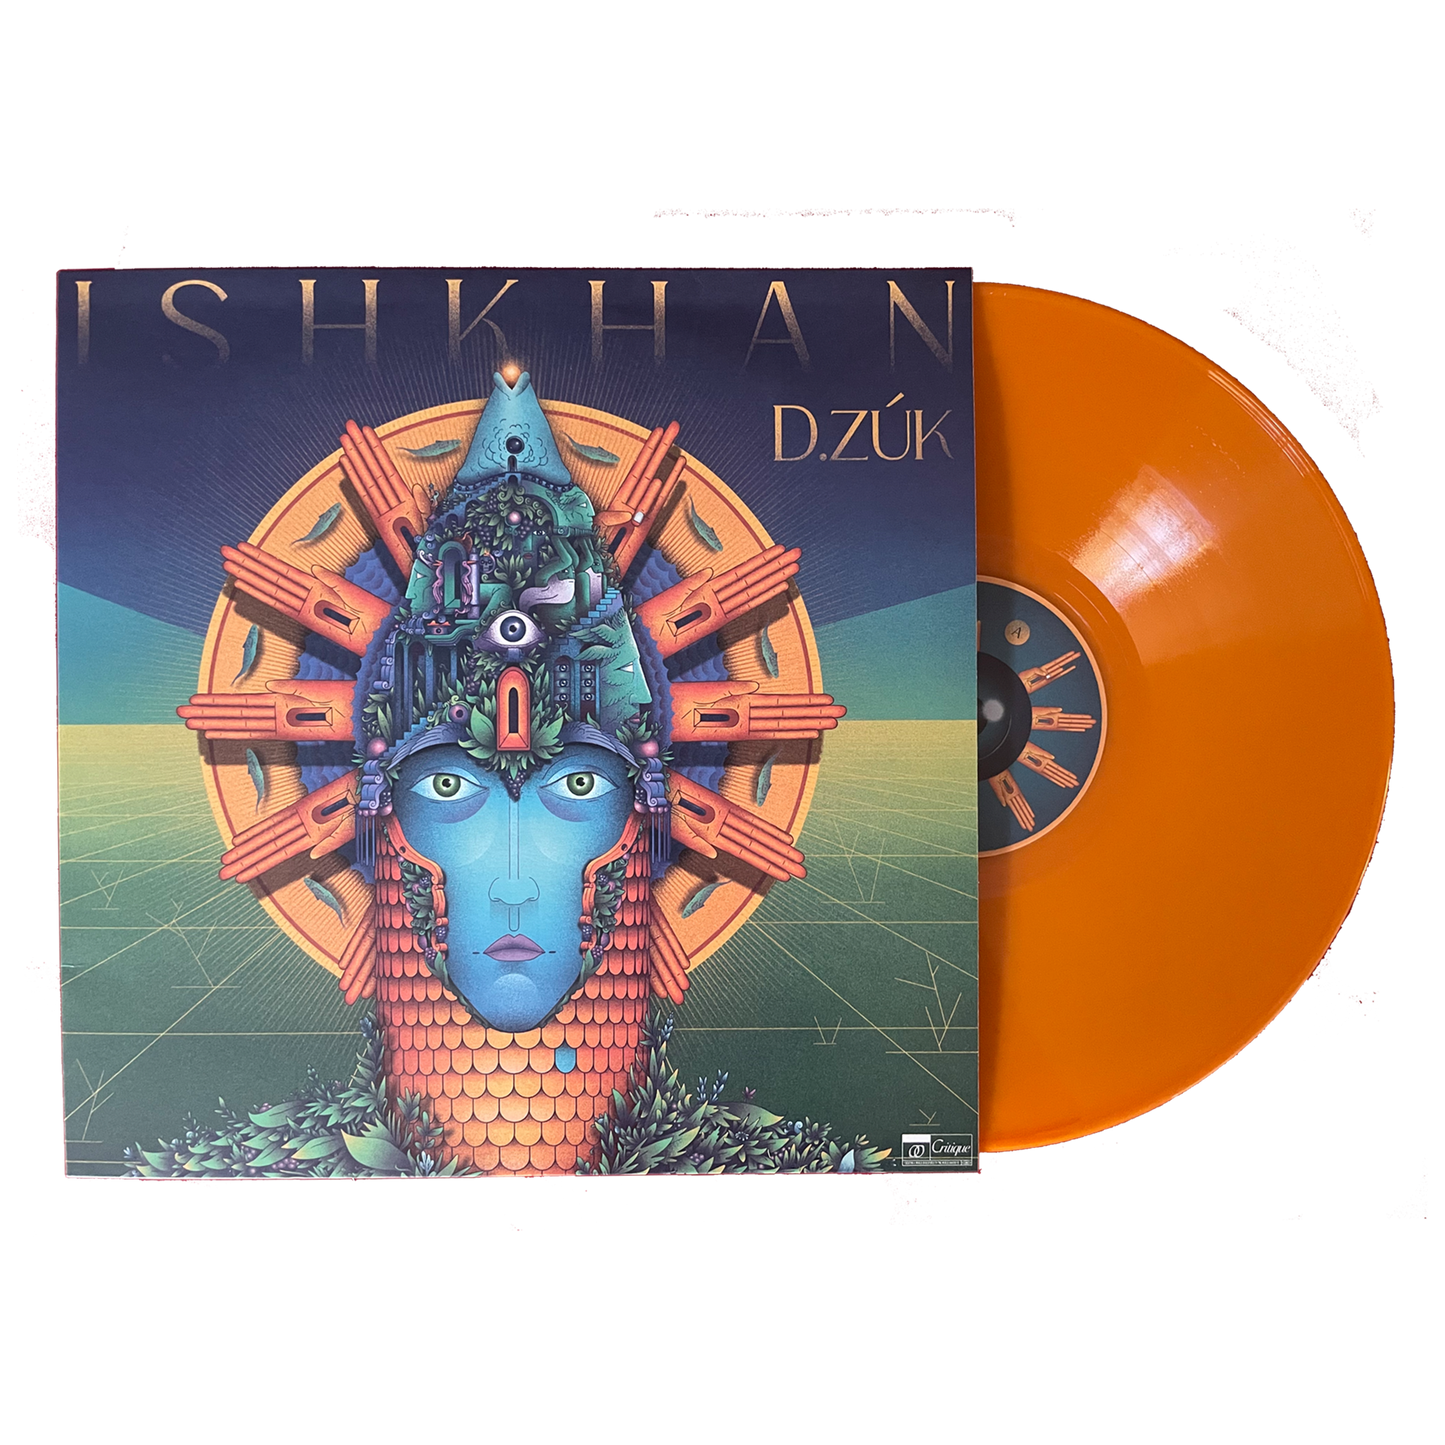 [CRTQ004] D.zúk - Ishkhan (12" Orange Vinyl)